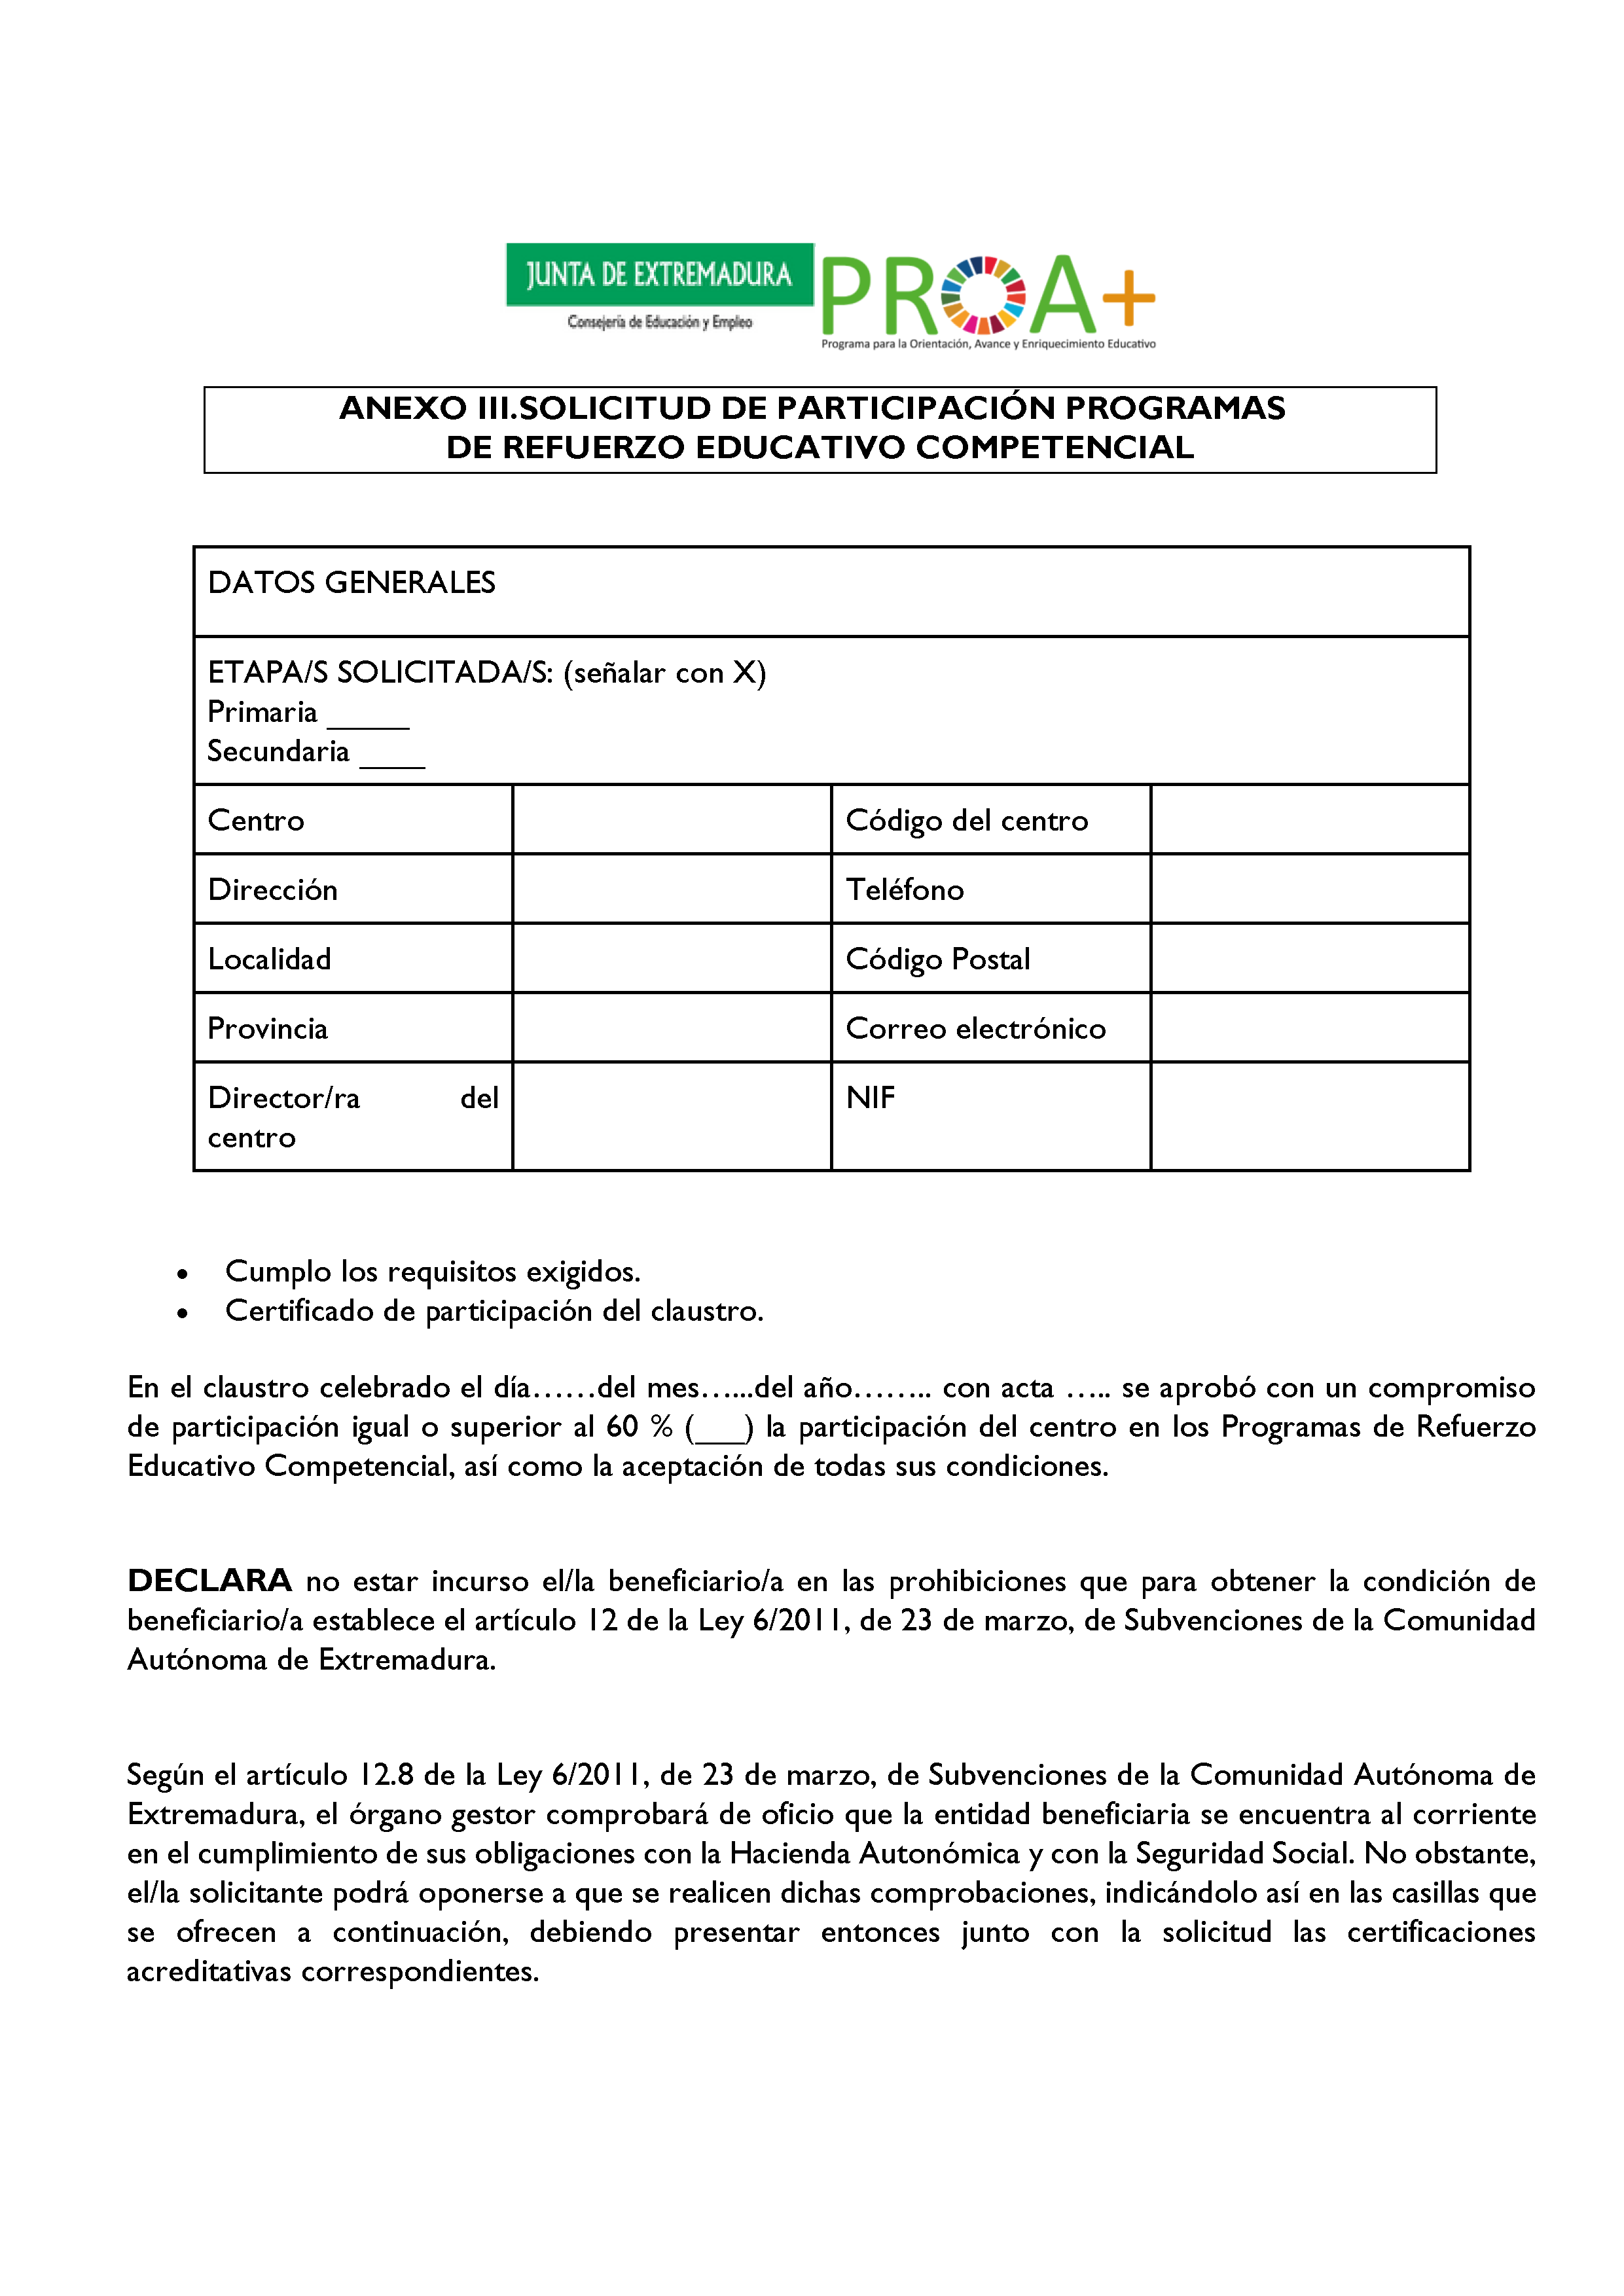 ANEXO I. ORGANIZACIÓN Y FUNCIONAMIENTO DE LOS PROGRAMAS DE REFUERZO EDUCATIVO COMPETENCIAL. Pag 5